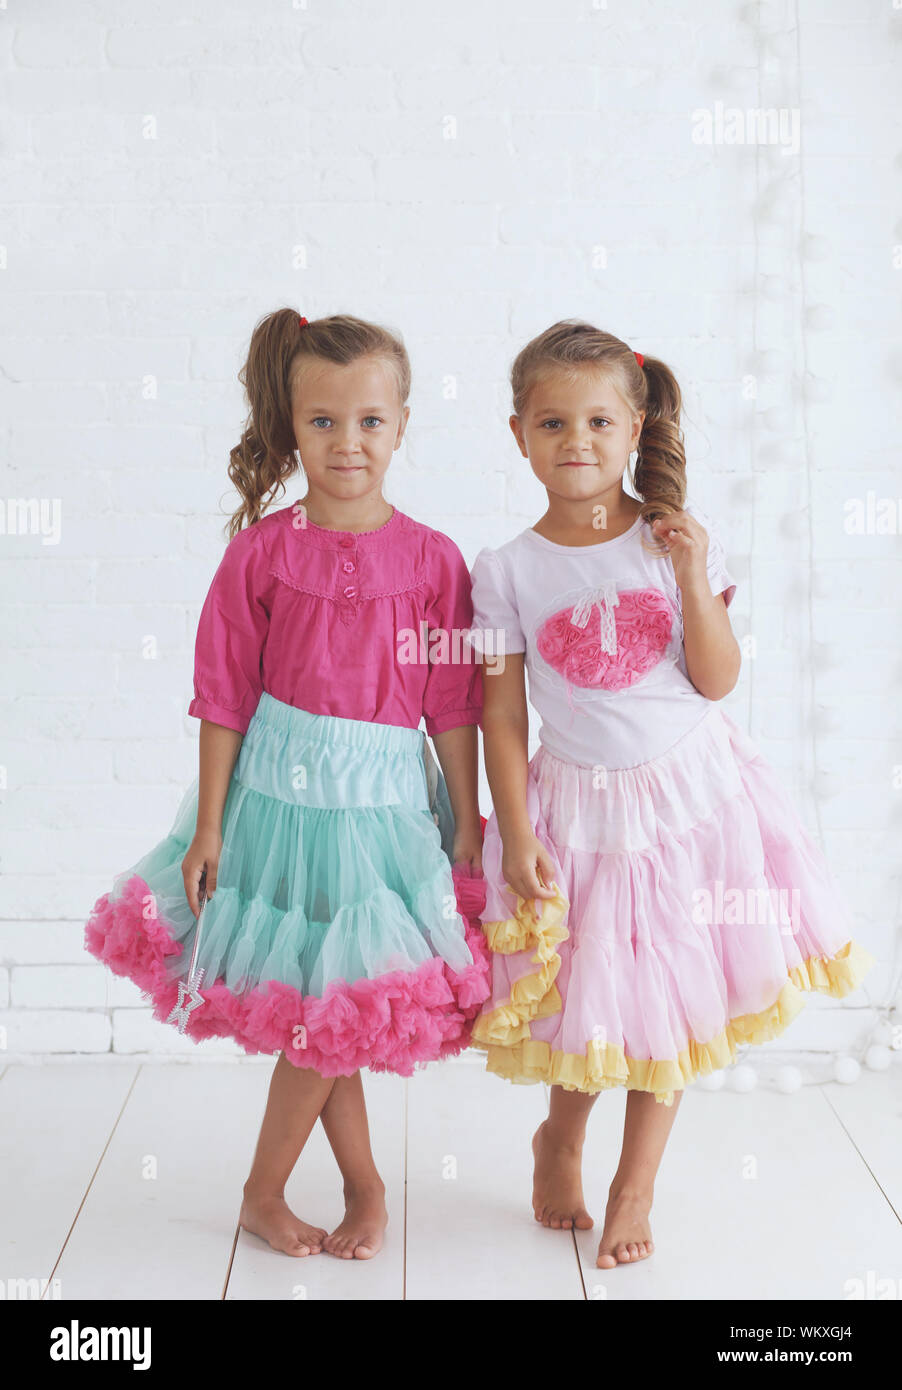 comerciante Chelín Mostrarte Retrato de estudio de dos cute little princess niñas vestidos de fiesta  falda tutu caramelo sosteniendo la varita mágica Fotografía de stock - Alamy